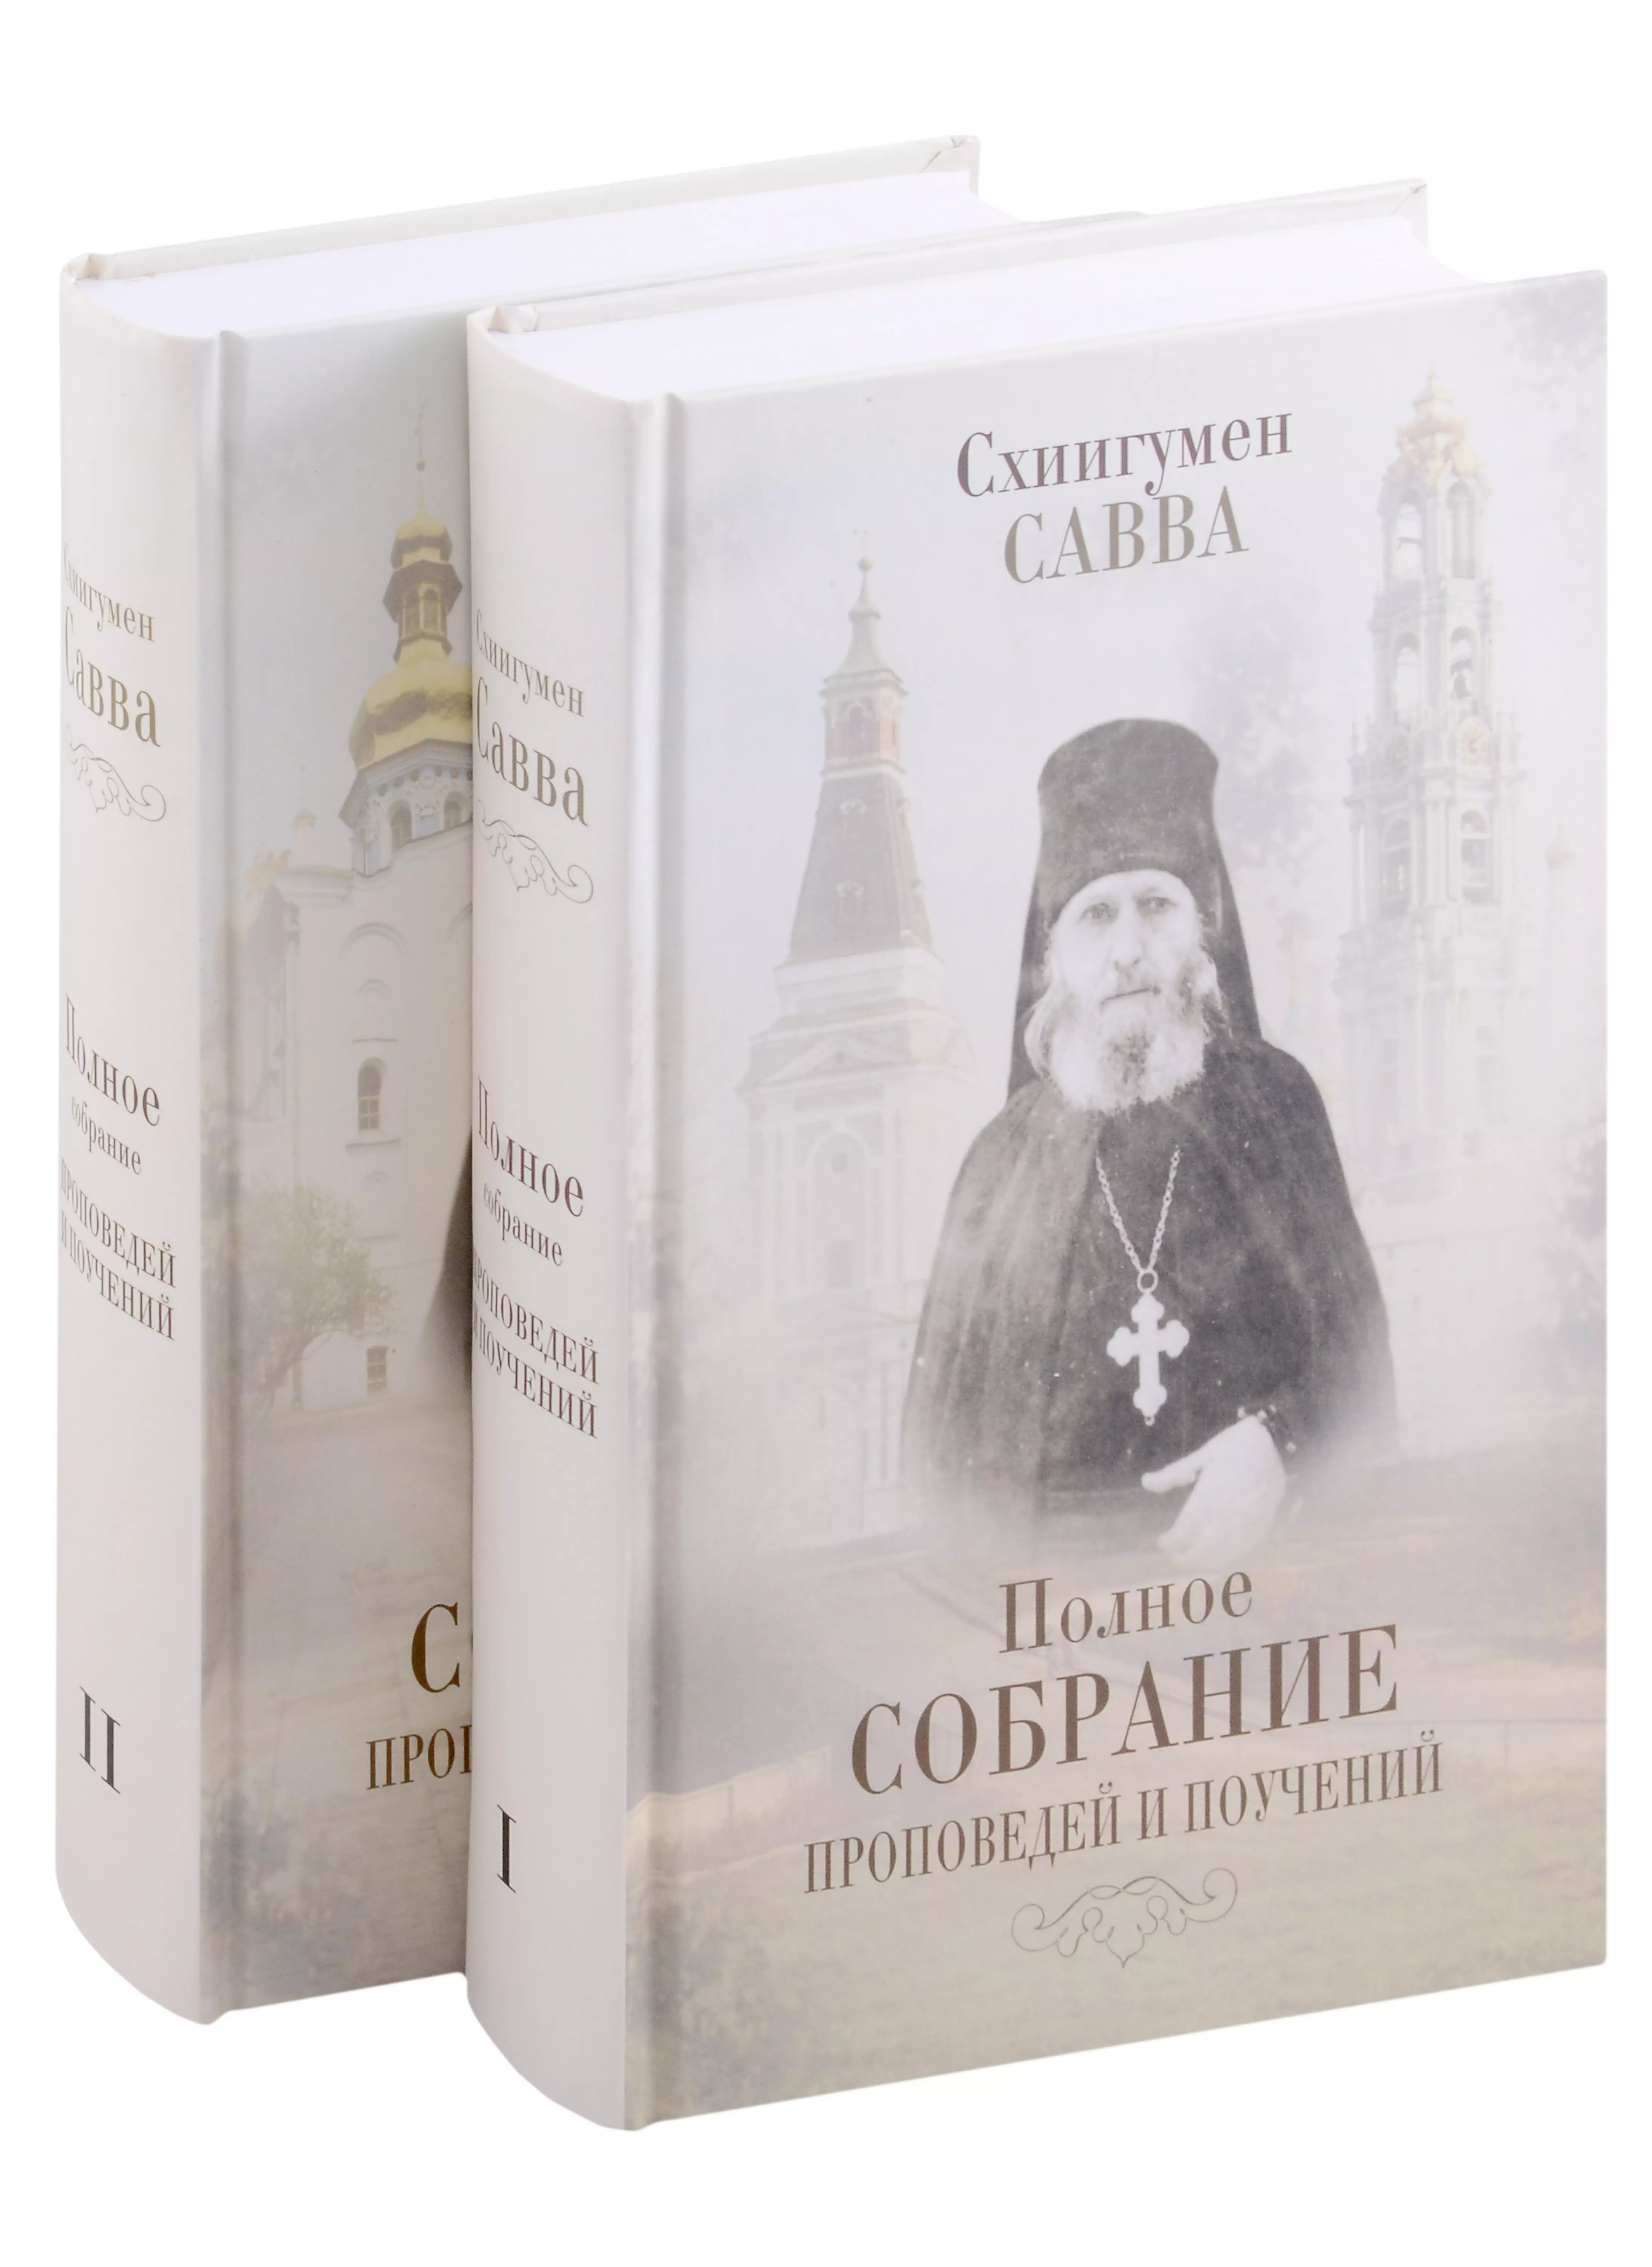 Остапенко Савва Полное собрание проповедей и поучений (комплект из 2 книг)